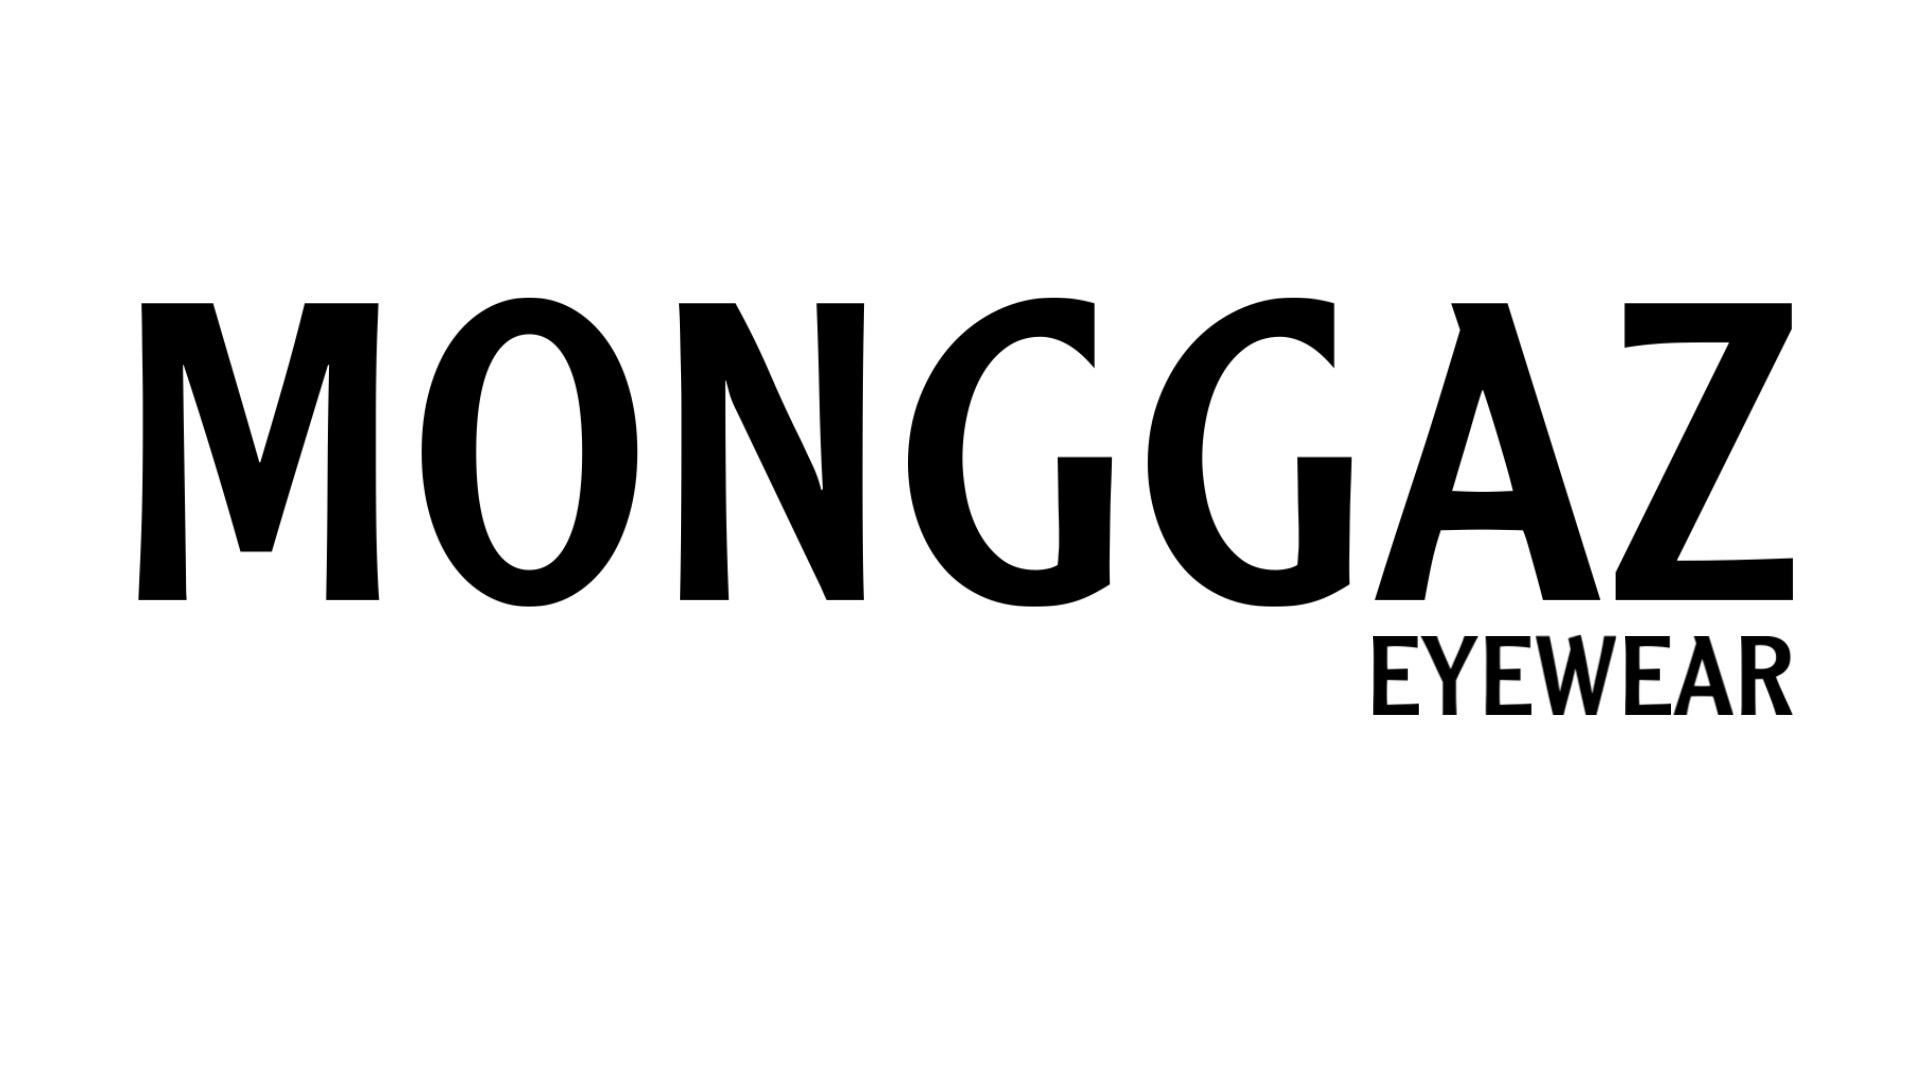 MONGGAZ